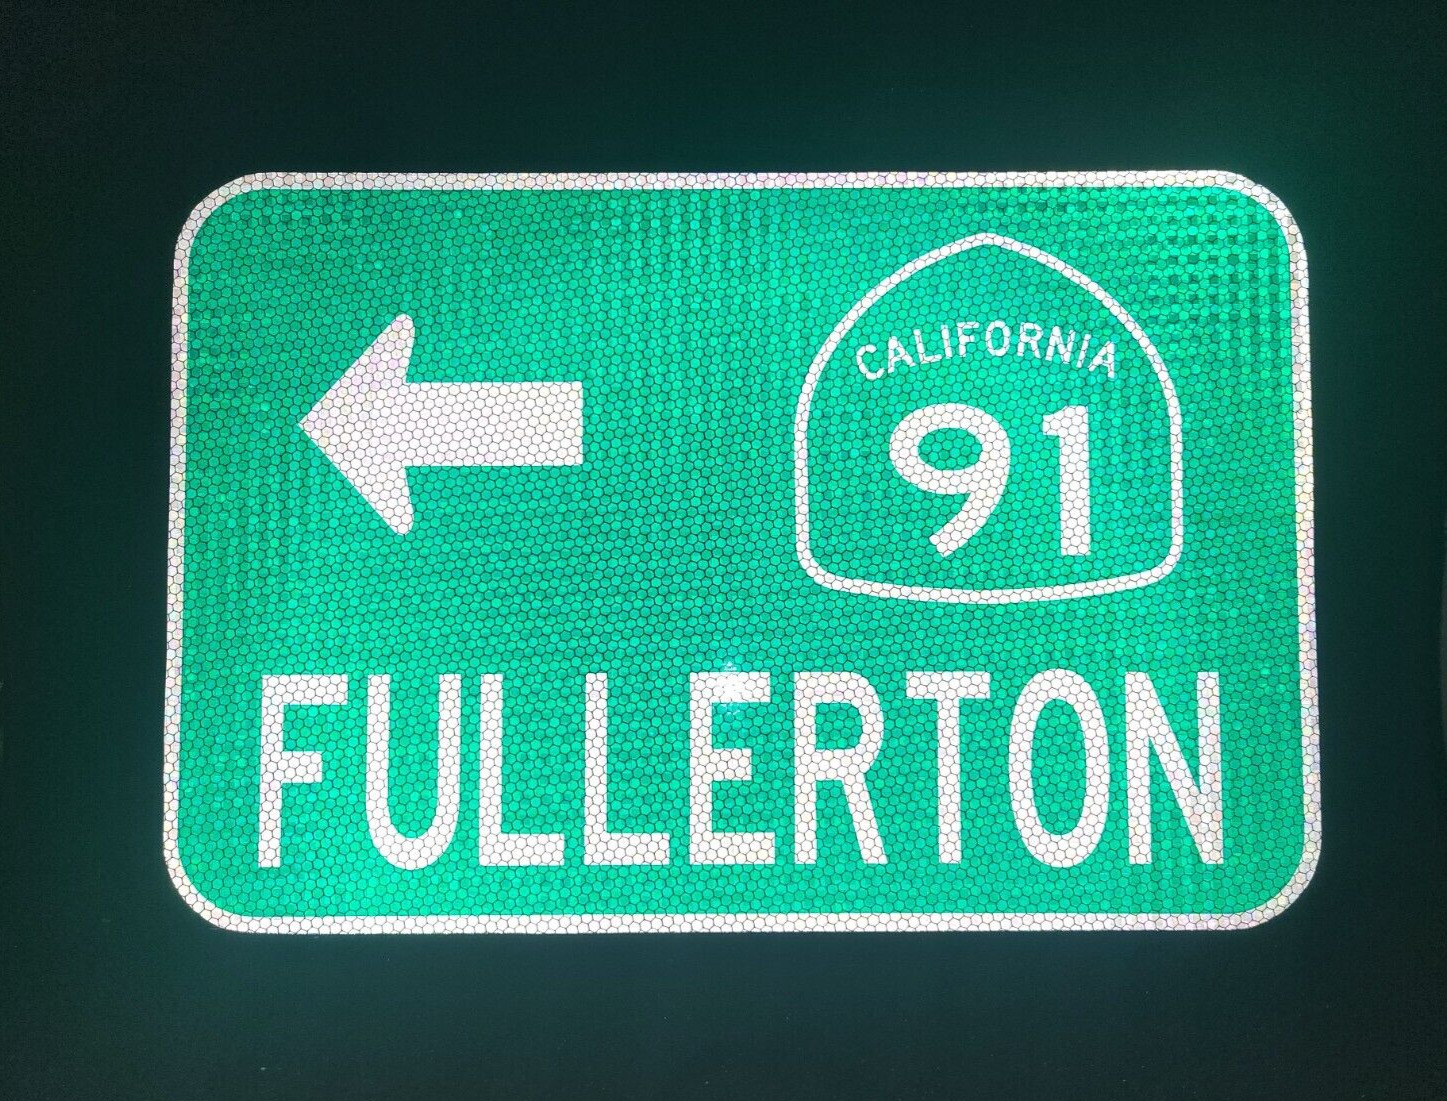 FULLERTON, California Hwy 91 route road sign 18